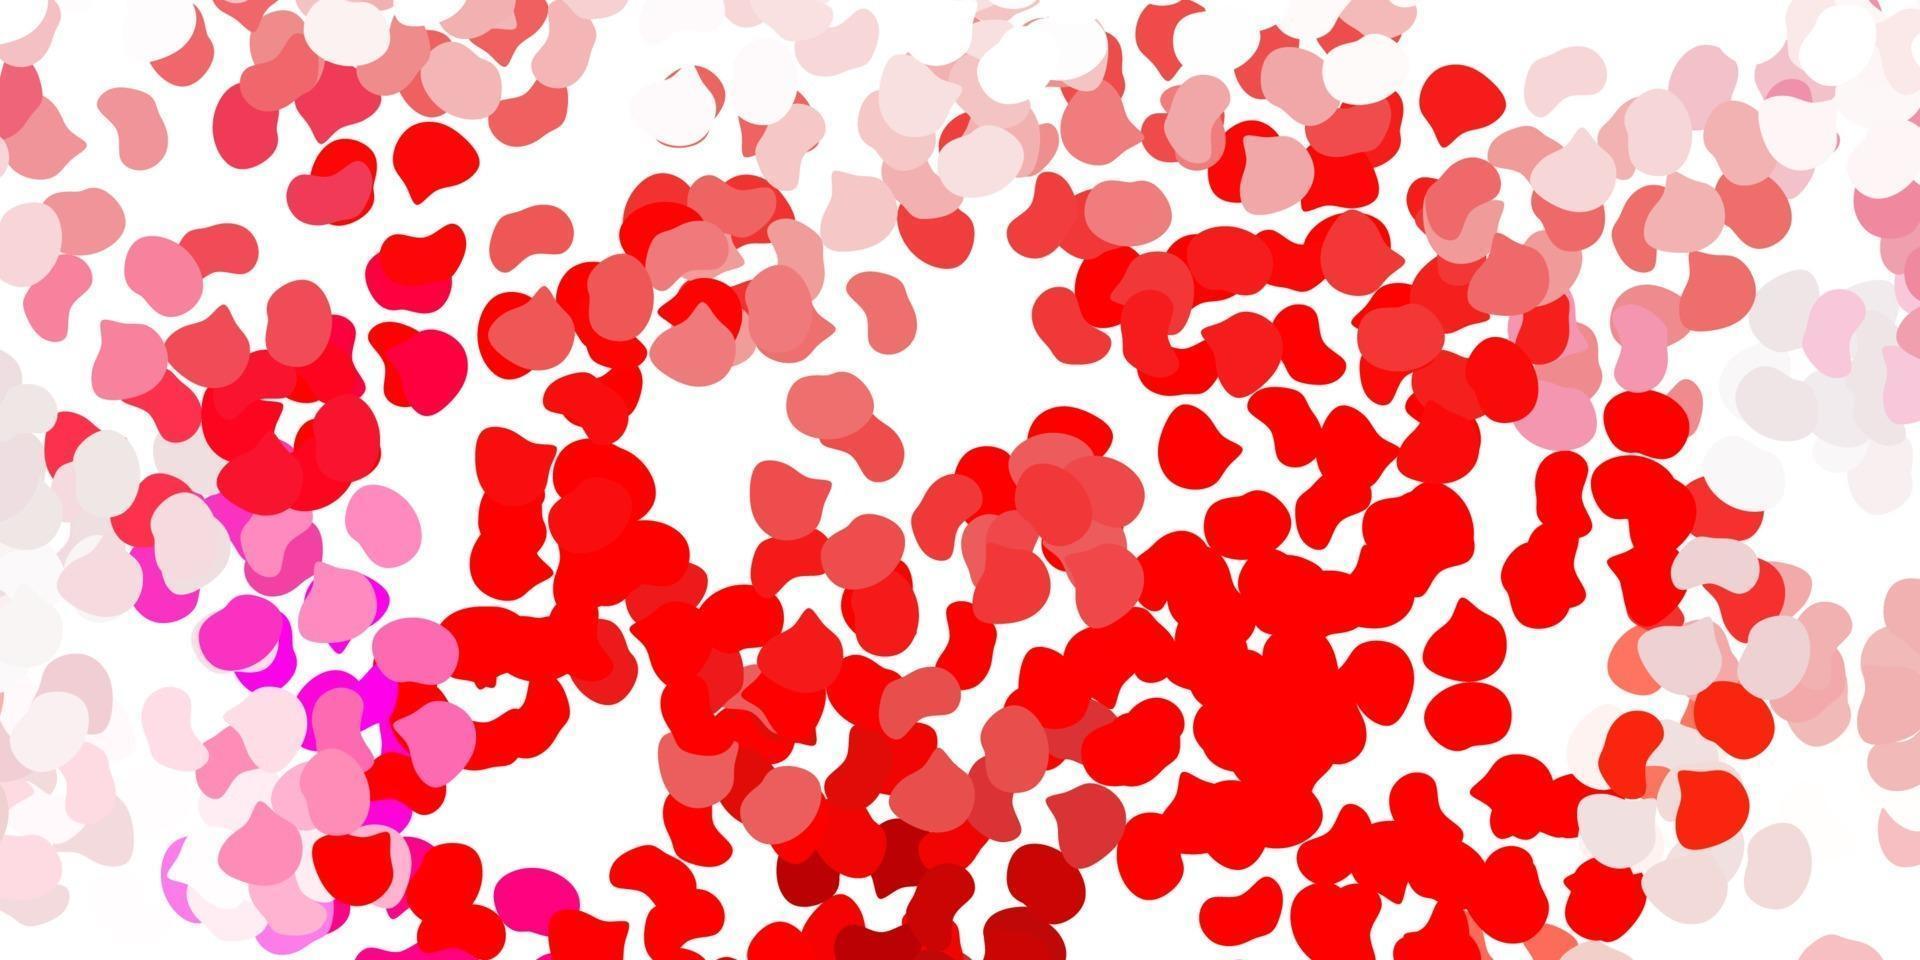 texture de vecteur rouge clair avec des formes de memphis.